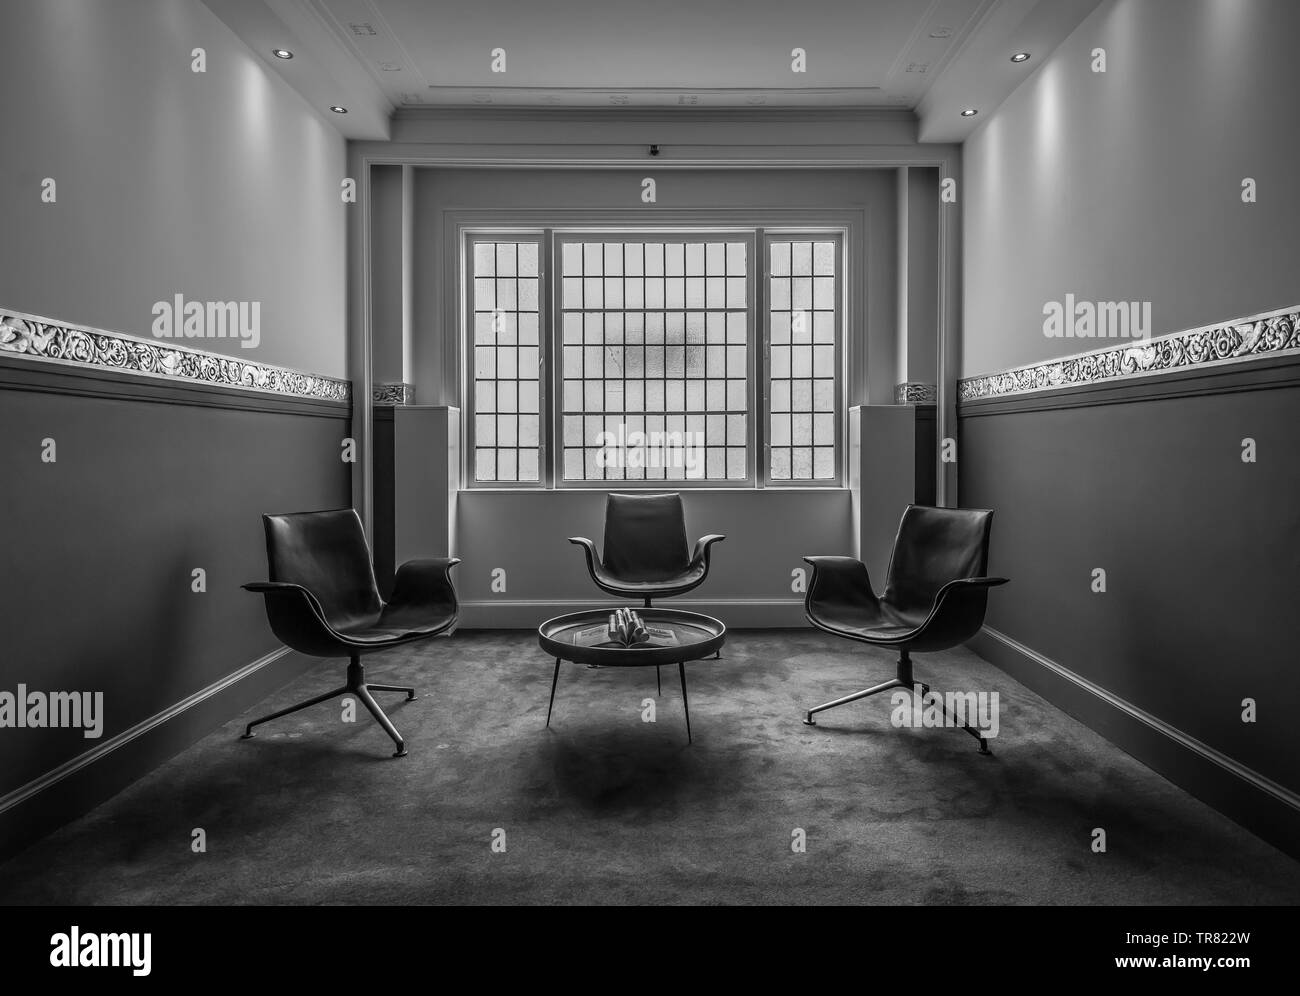 Image en niveaux de gris de chaises dans un hall Banque D'Images